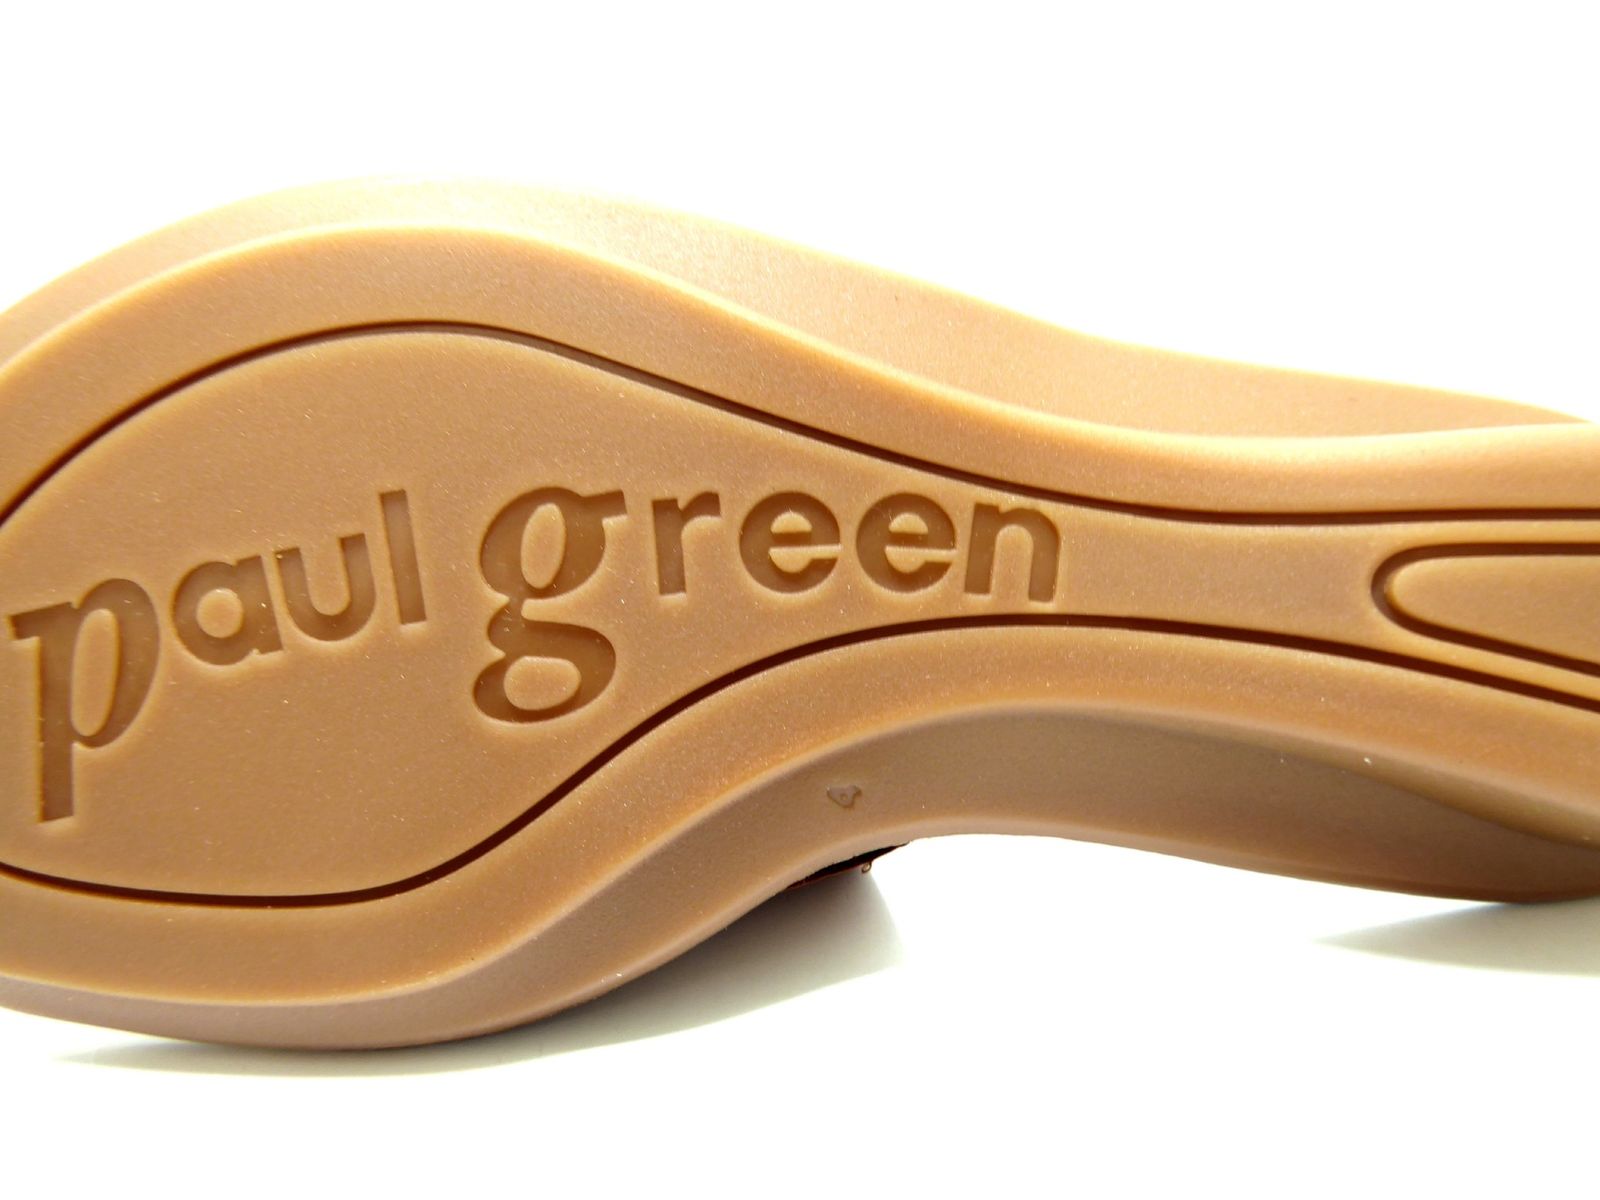 Schuh von Paul Green, 6½